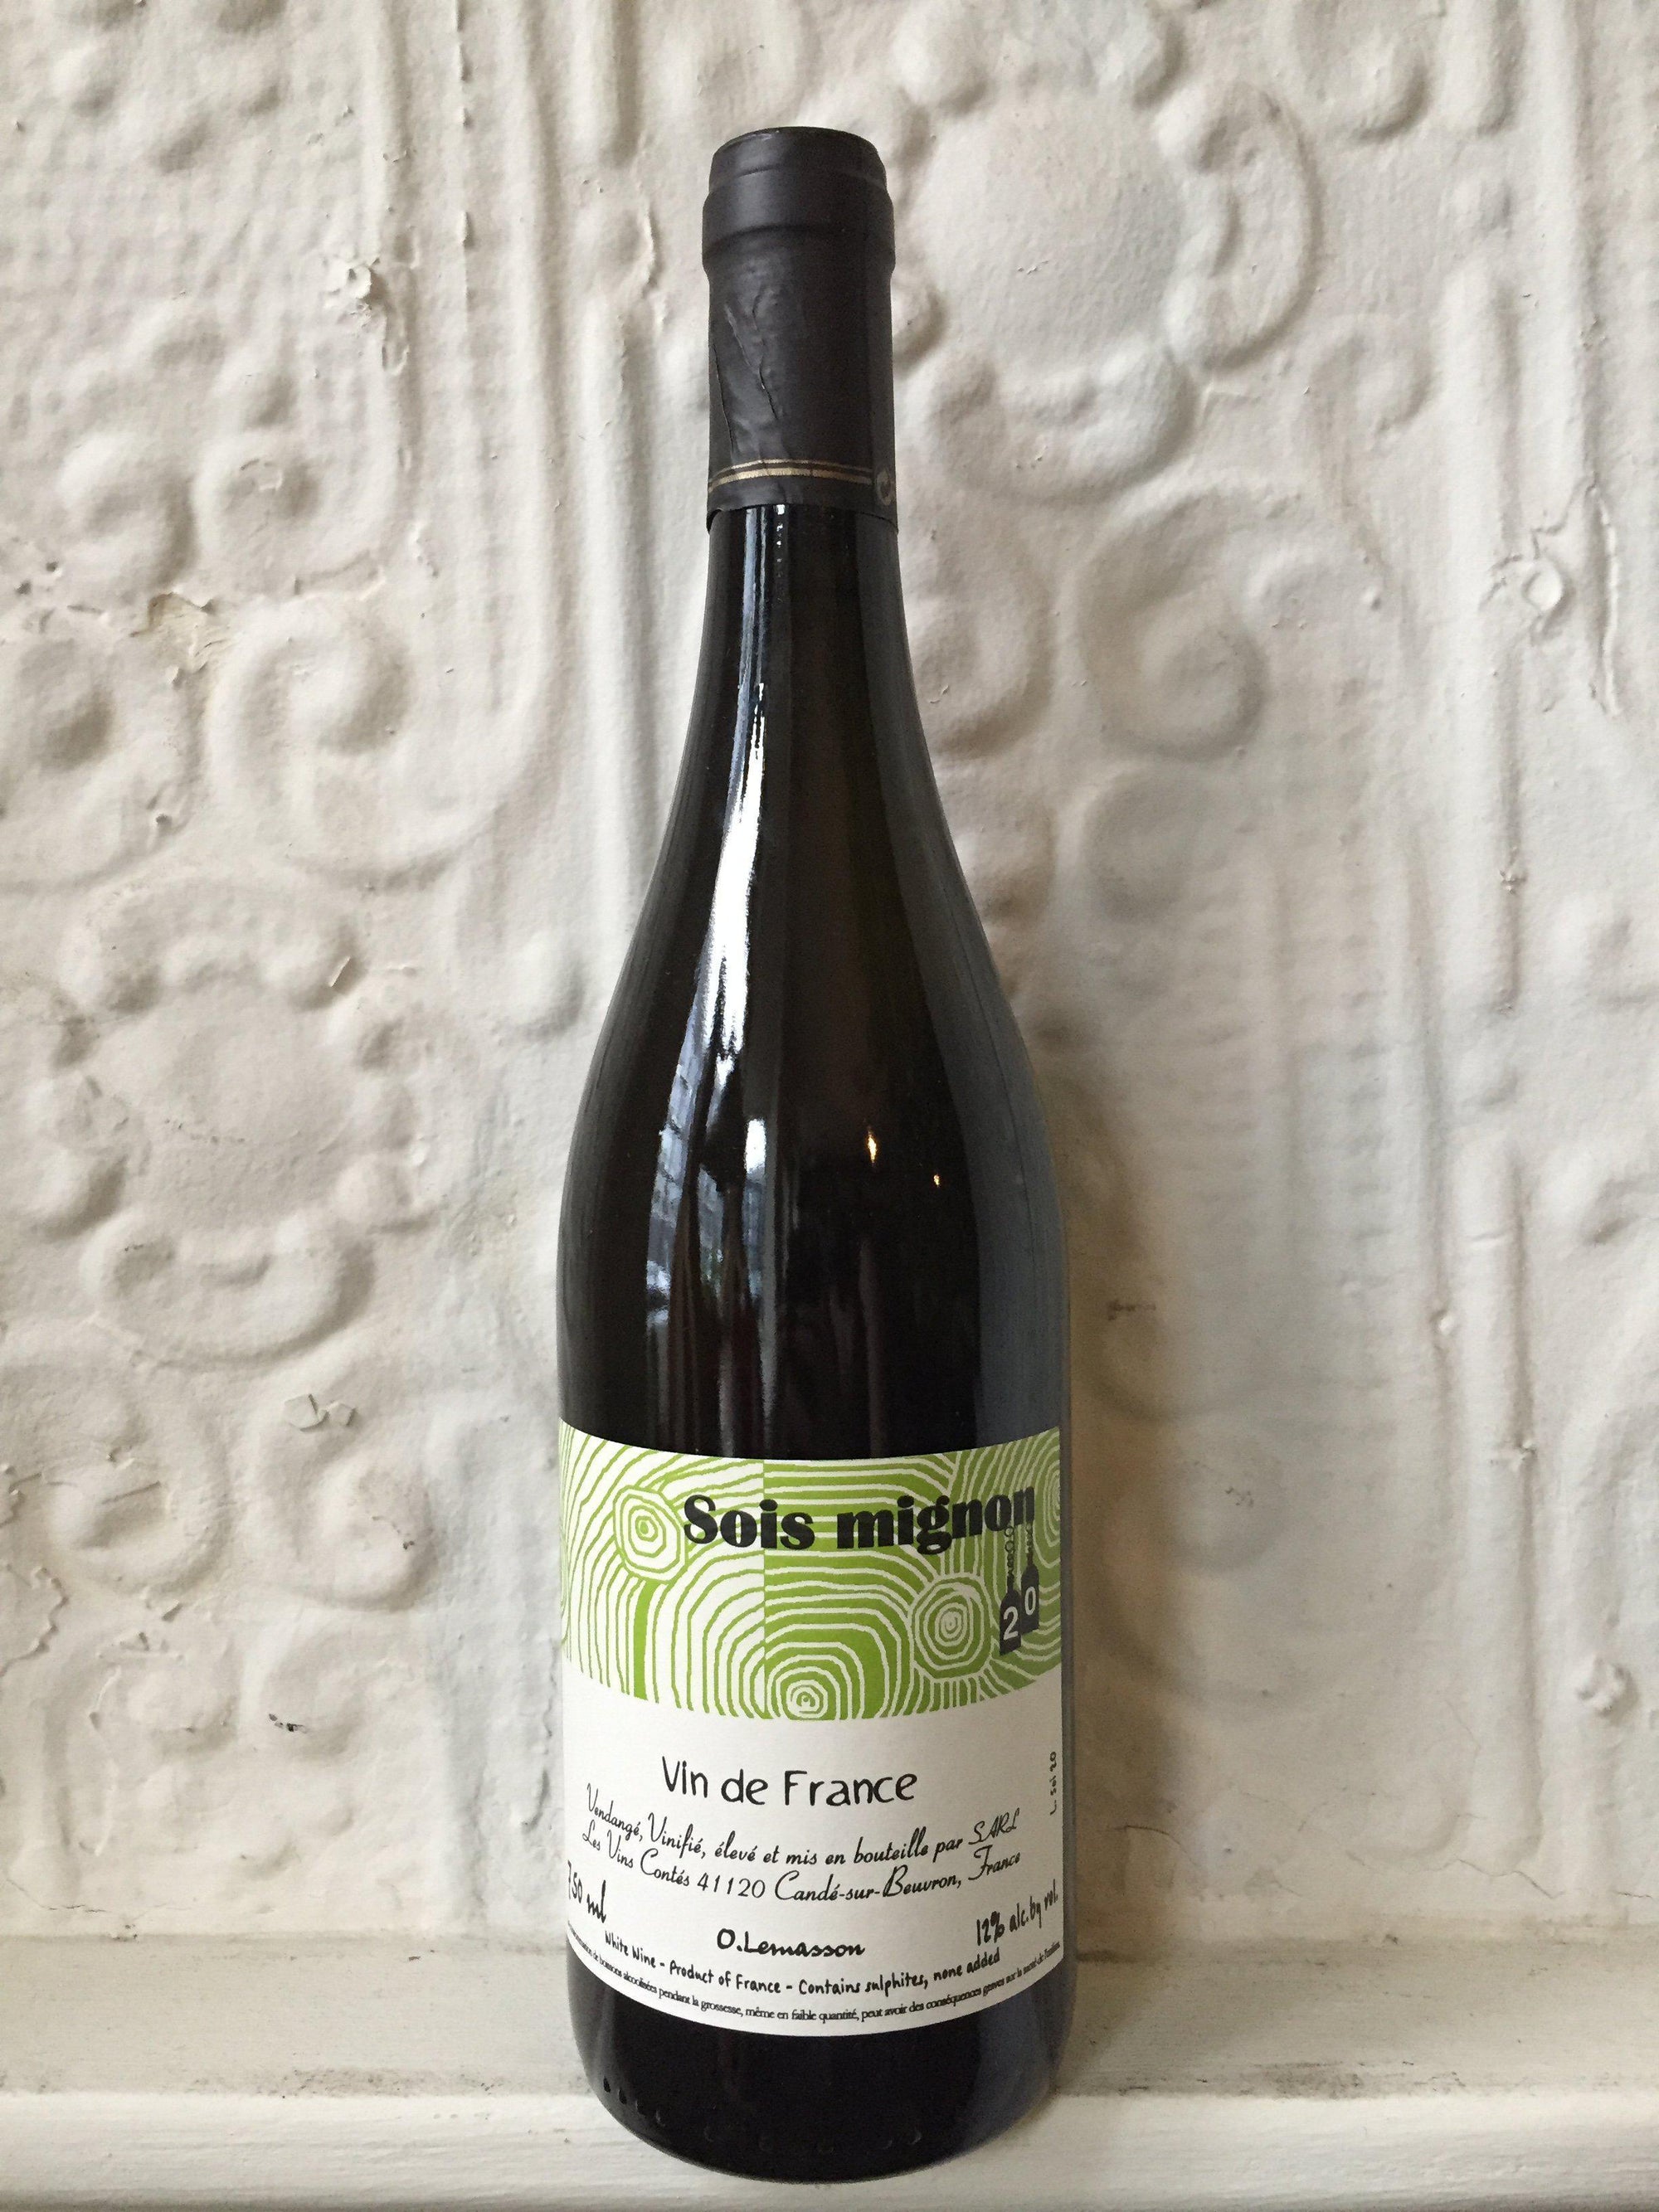 Sois Mignon, Les Vins Contes 2020 (Loire, France)-Wine-Bibber & Bell